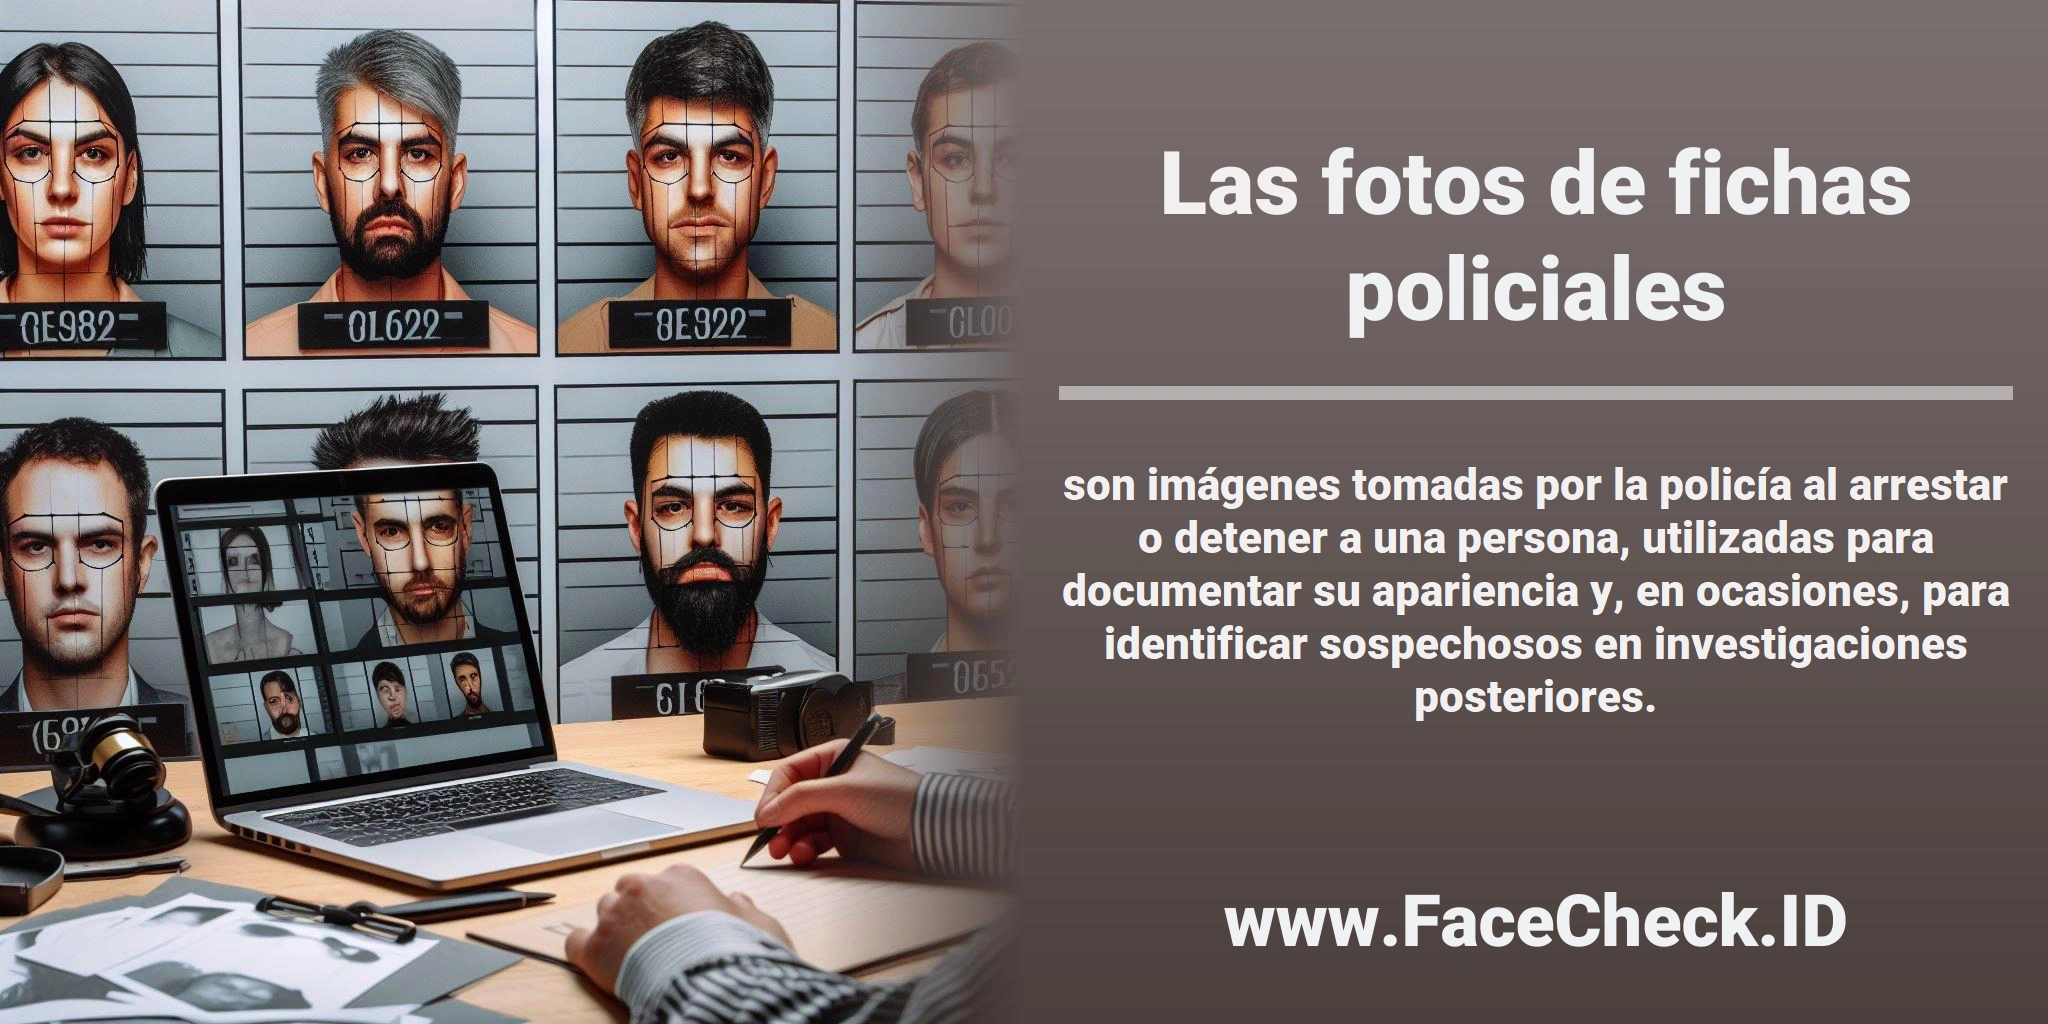 Las <b>fotos de fichas policiales</b> son imágenes tomadas por la policía al arrestar o detener a una persona, utilizadas para documentar su apariencia y, en ocasiones, para identificar sospechosos en investigaciones posteriores.